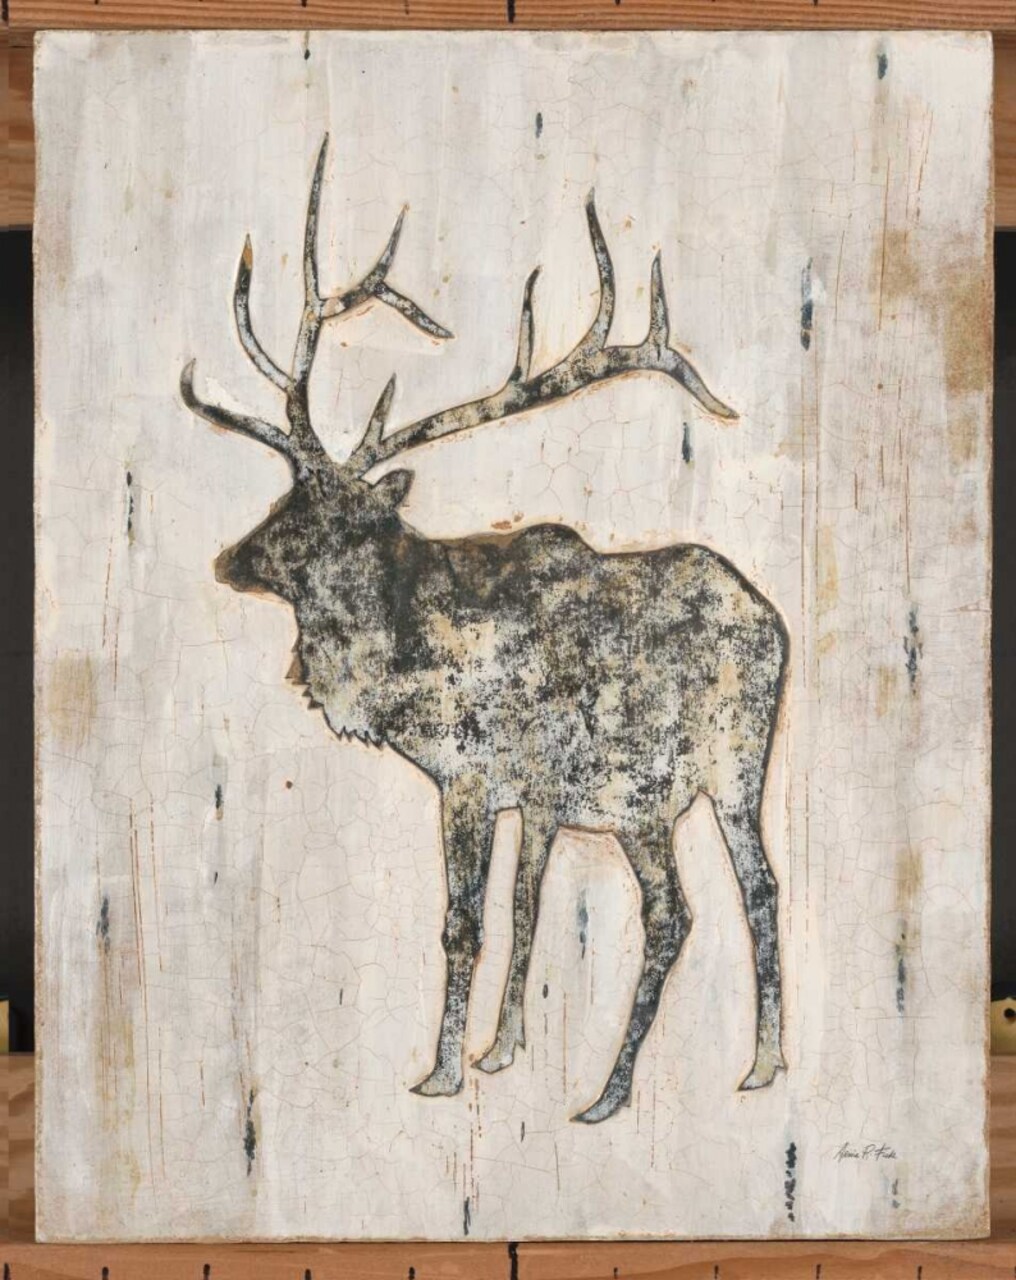 Rustic Elk Poster Print by Arnie Fisk - Item # VARPDX011FIS1208